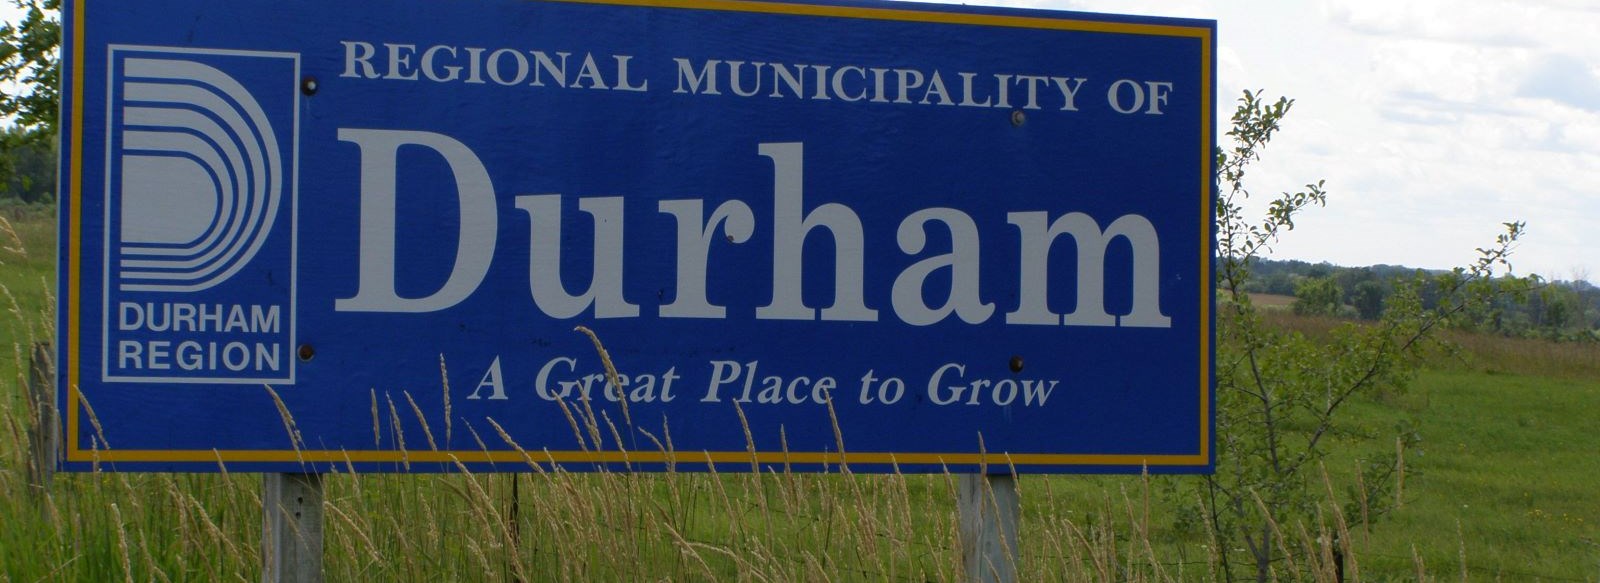 durham region sign in field